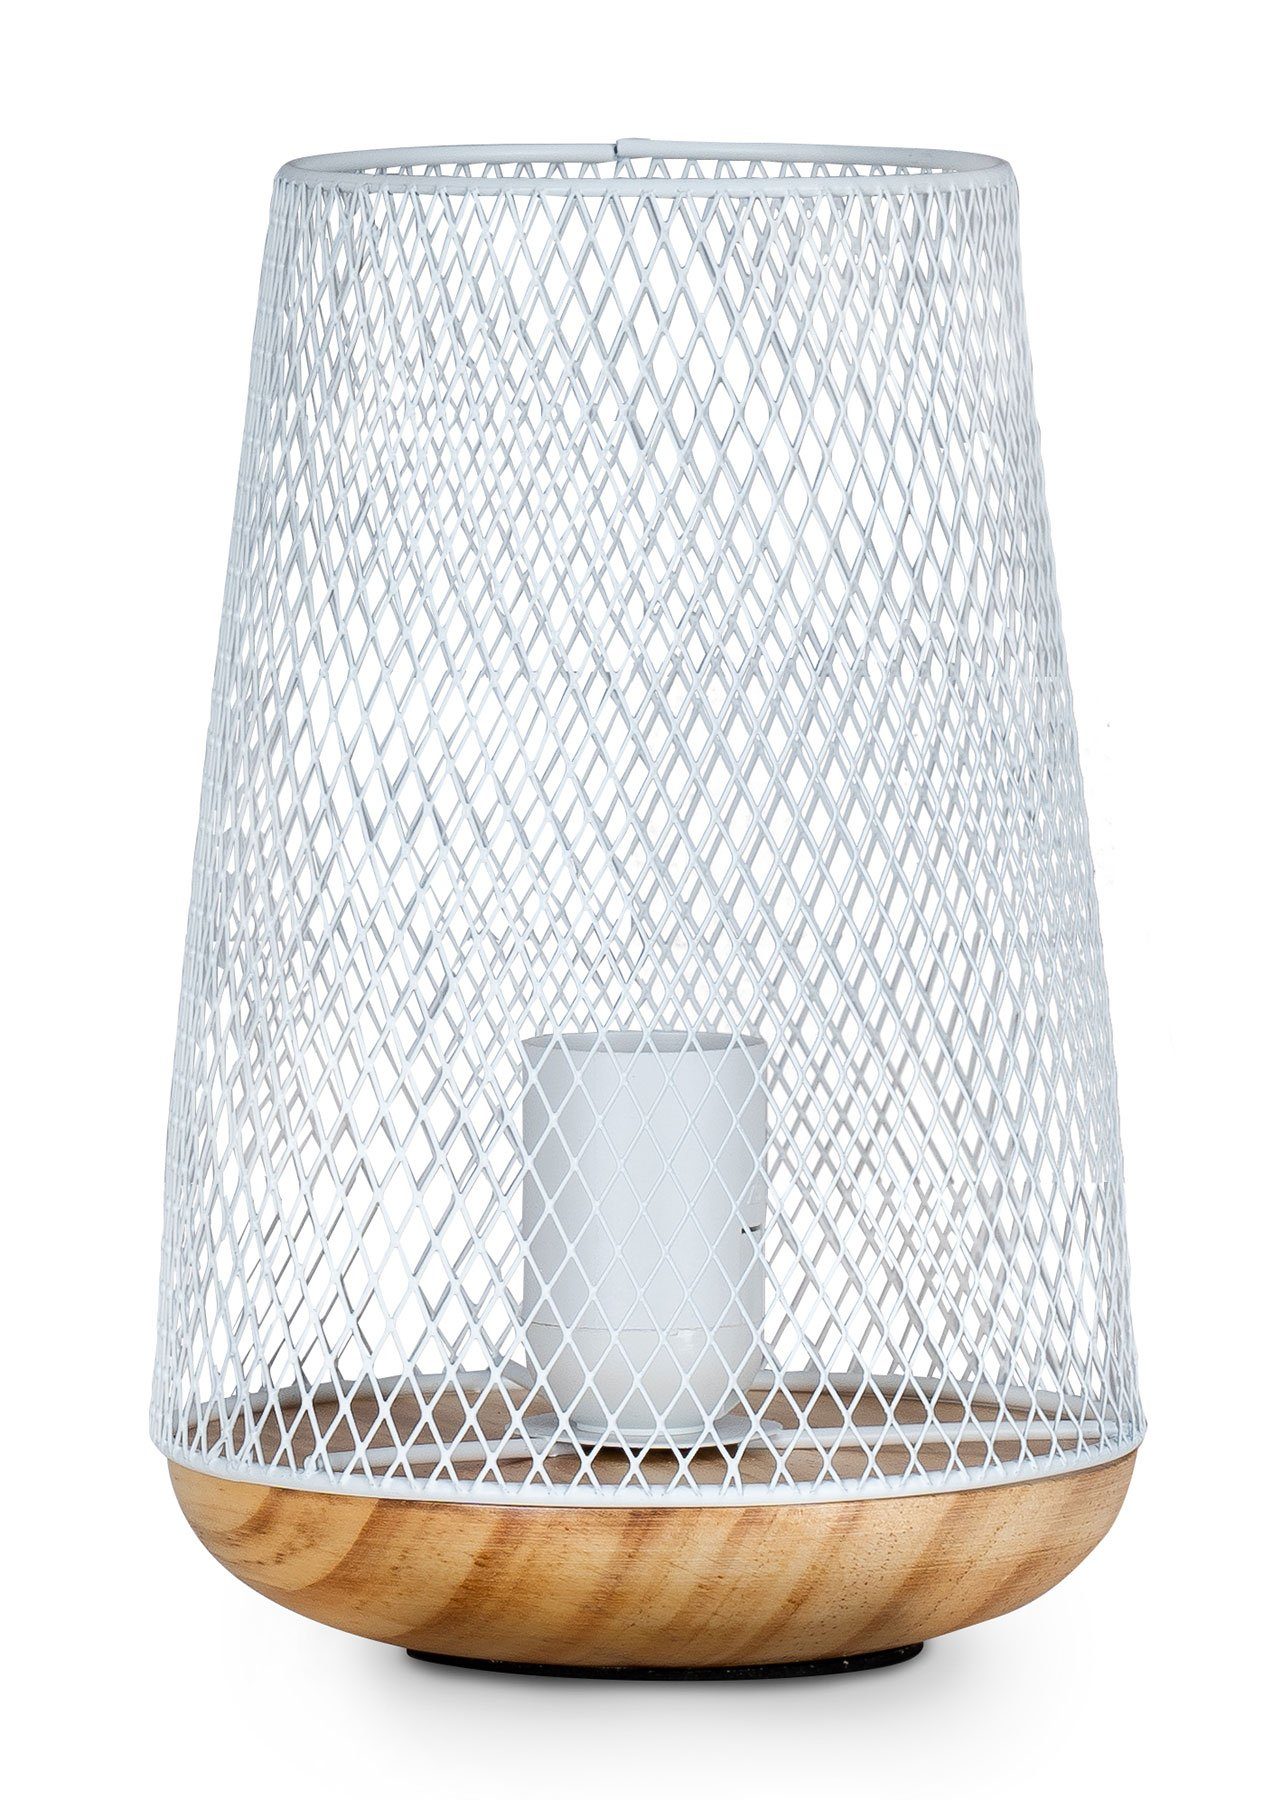 Deko Nachttischlampe, Tischlampe Standleuchte Weiß H22cm Levandeo® Holz Metall Lampe Leuchte